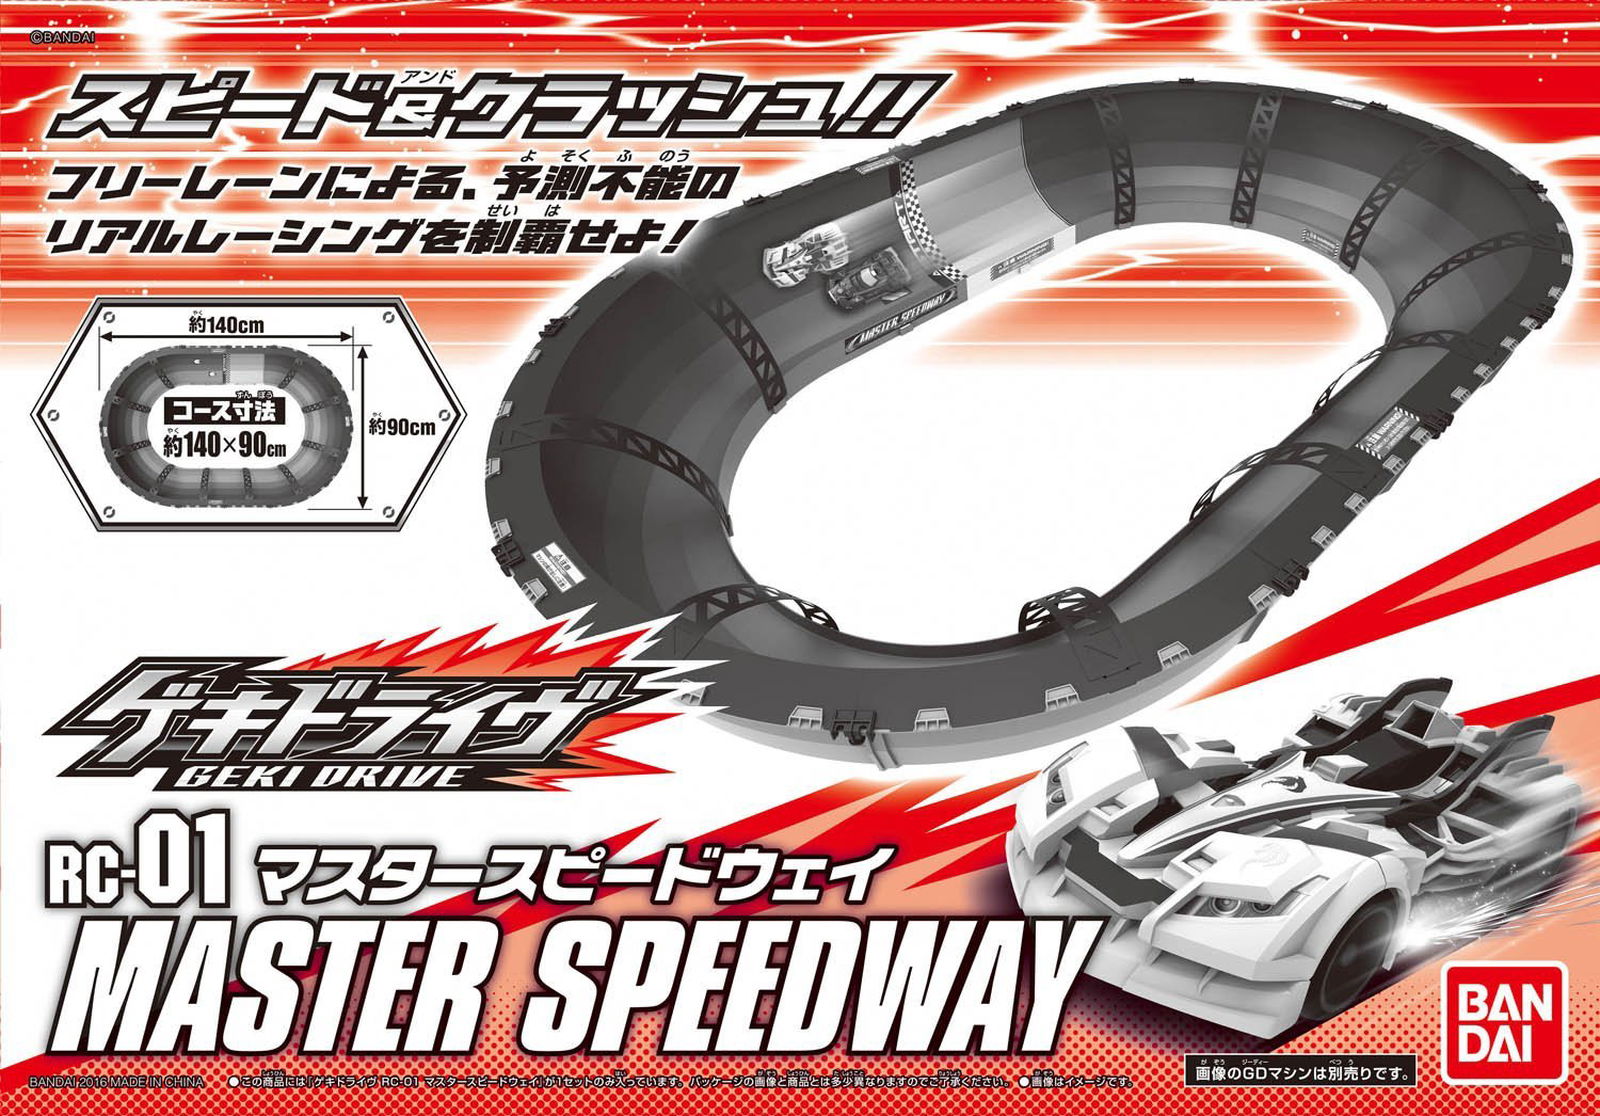 Bandai RC-01 Master Speed Way - BanzaiHobby